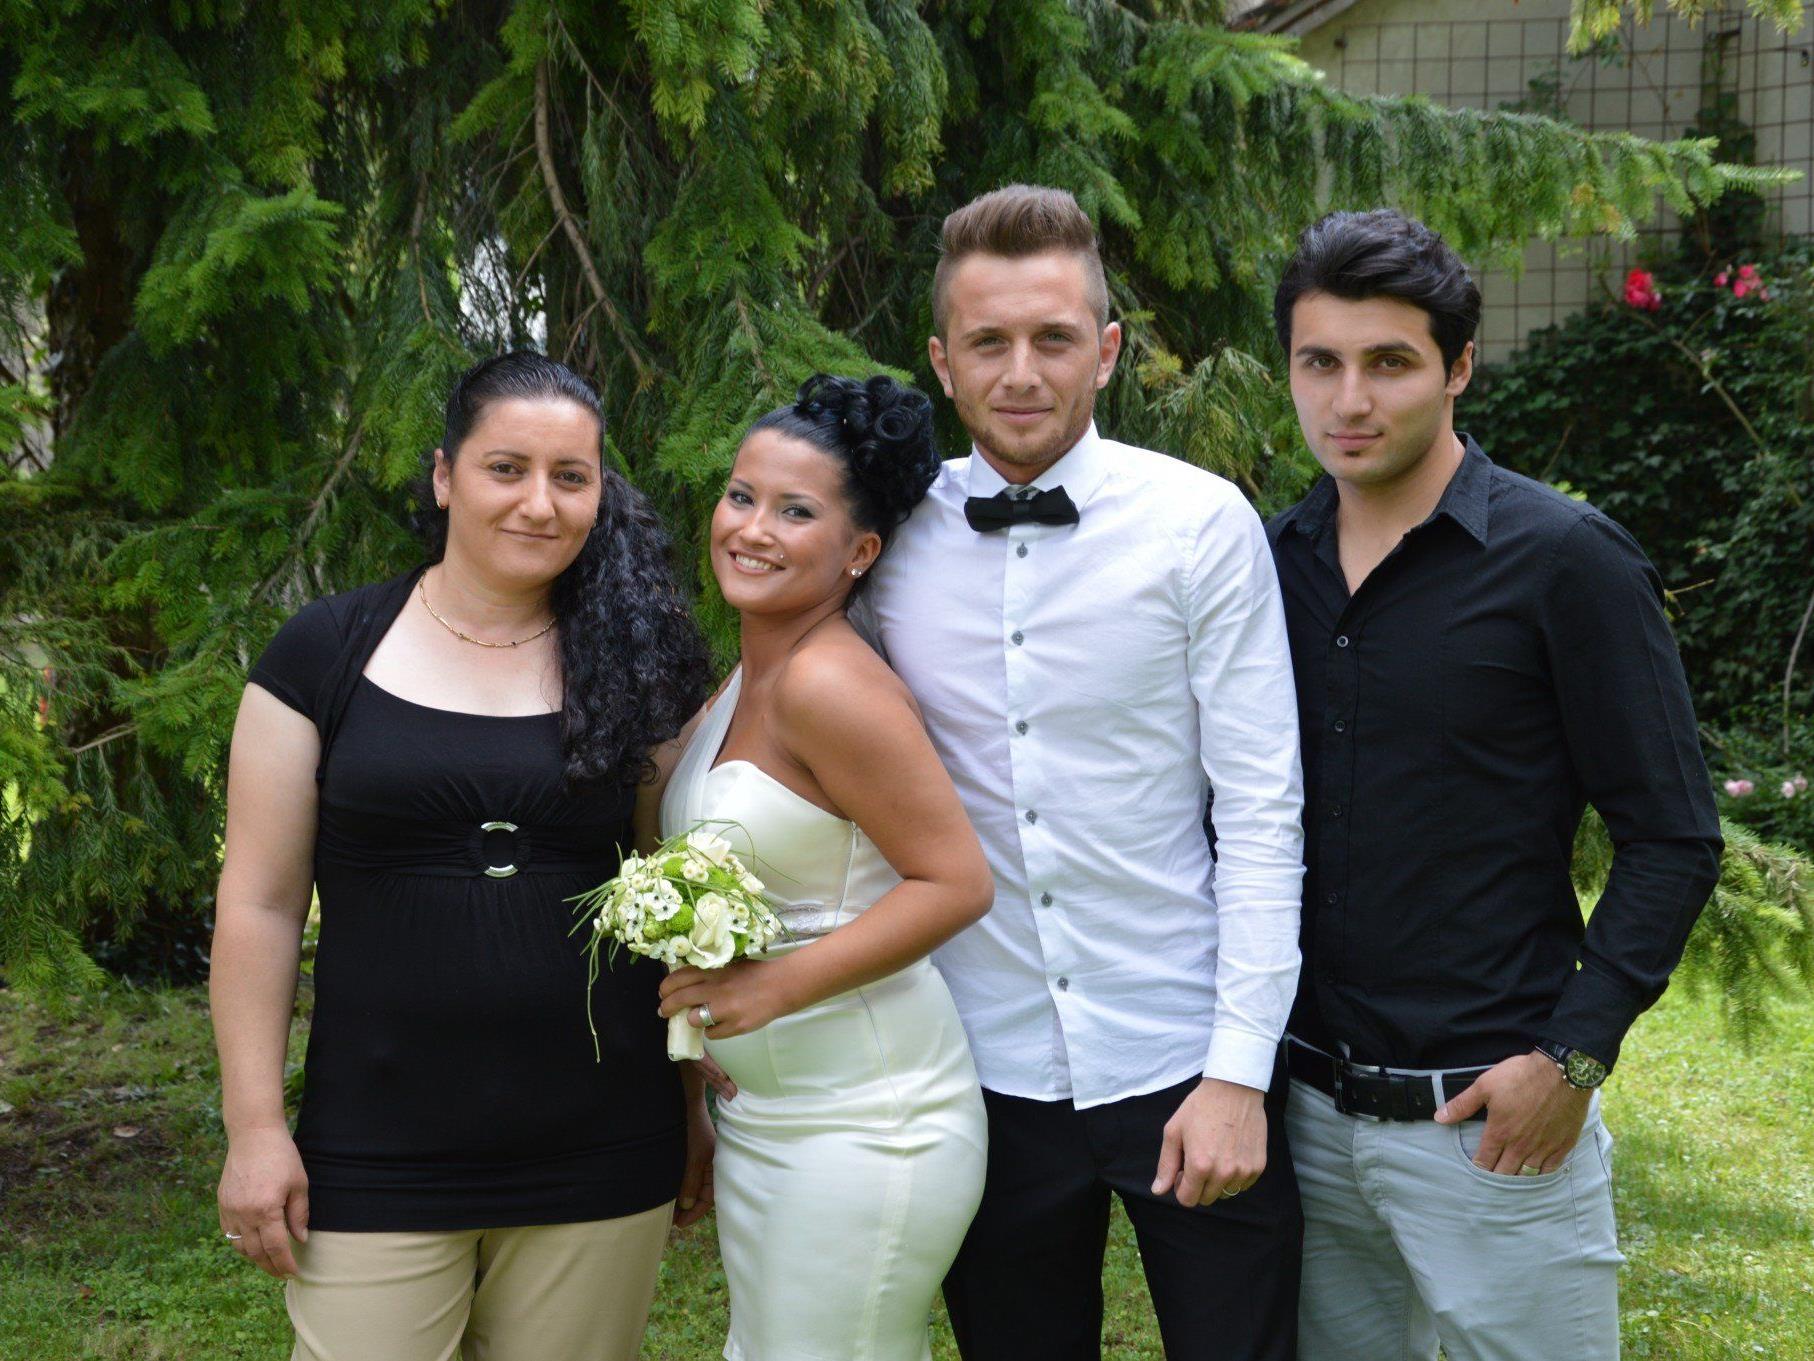 Eda Keceli und Baris Korkmaz haben geheiratet